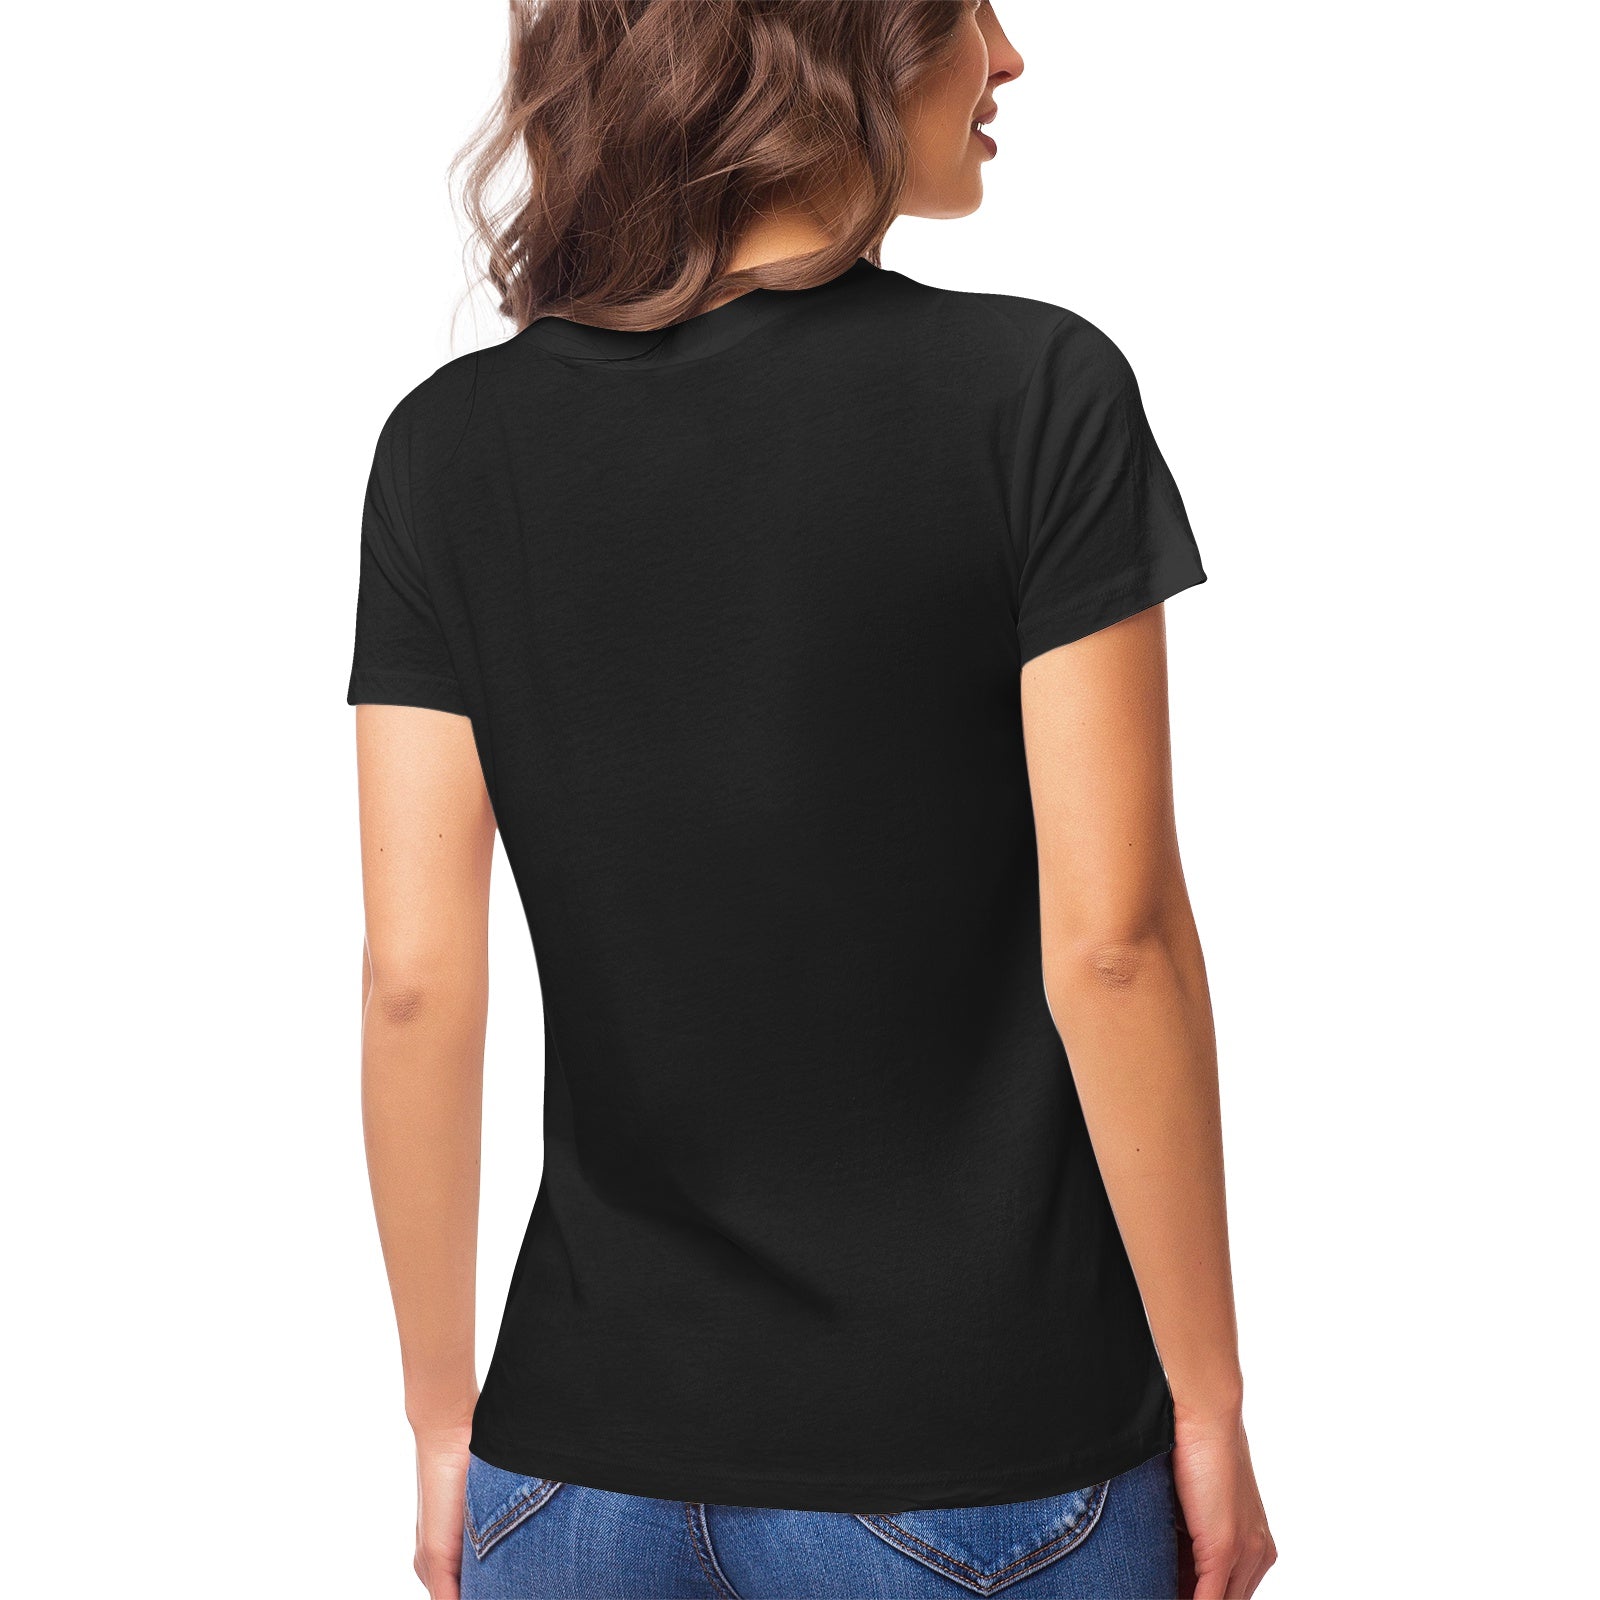 Yoga Cat 14 Women's Ultrasoft Pima Cotton T‑shirt - DromedarShop.com Online Boutique